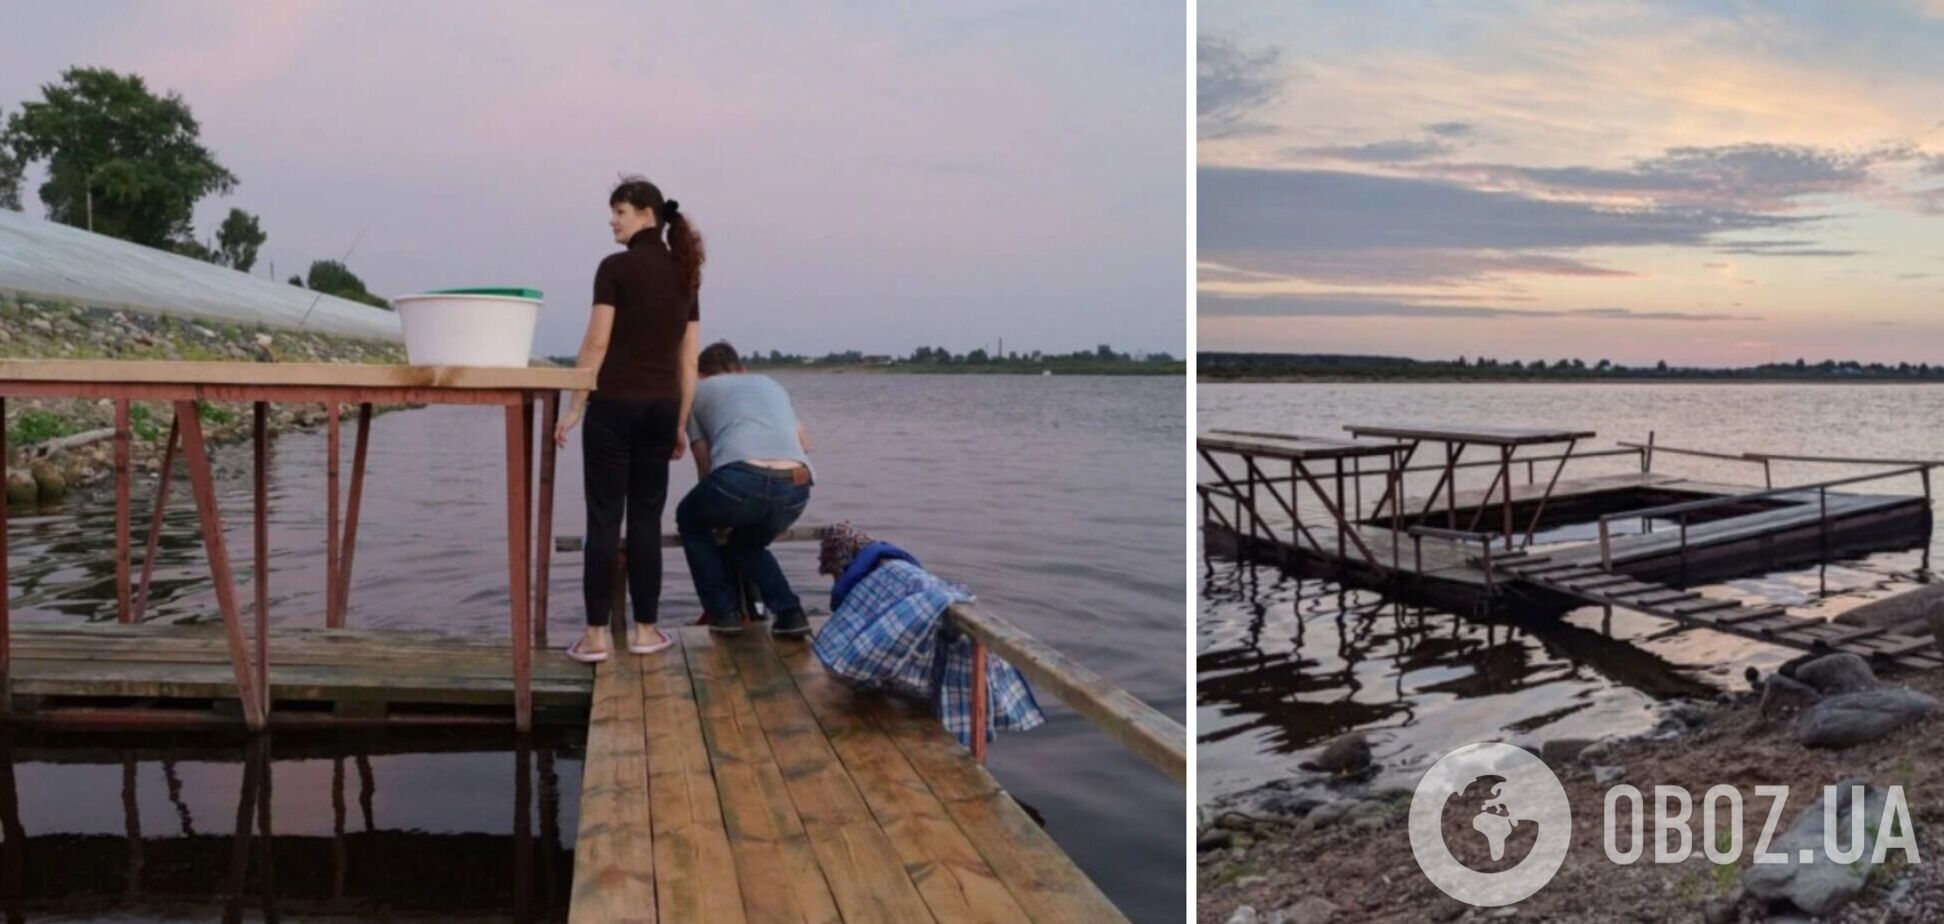 Пришла цивилизация: россияне похвастались 'полоскалками' для стирки в реке. Видео